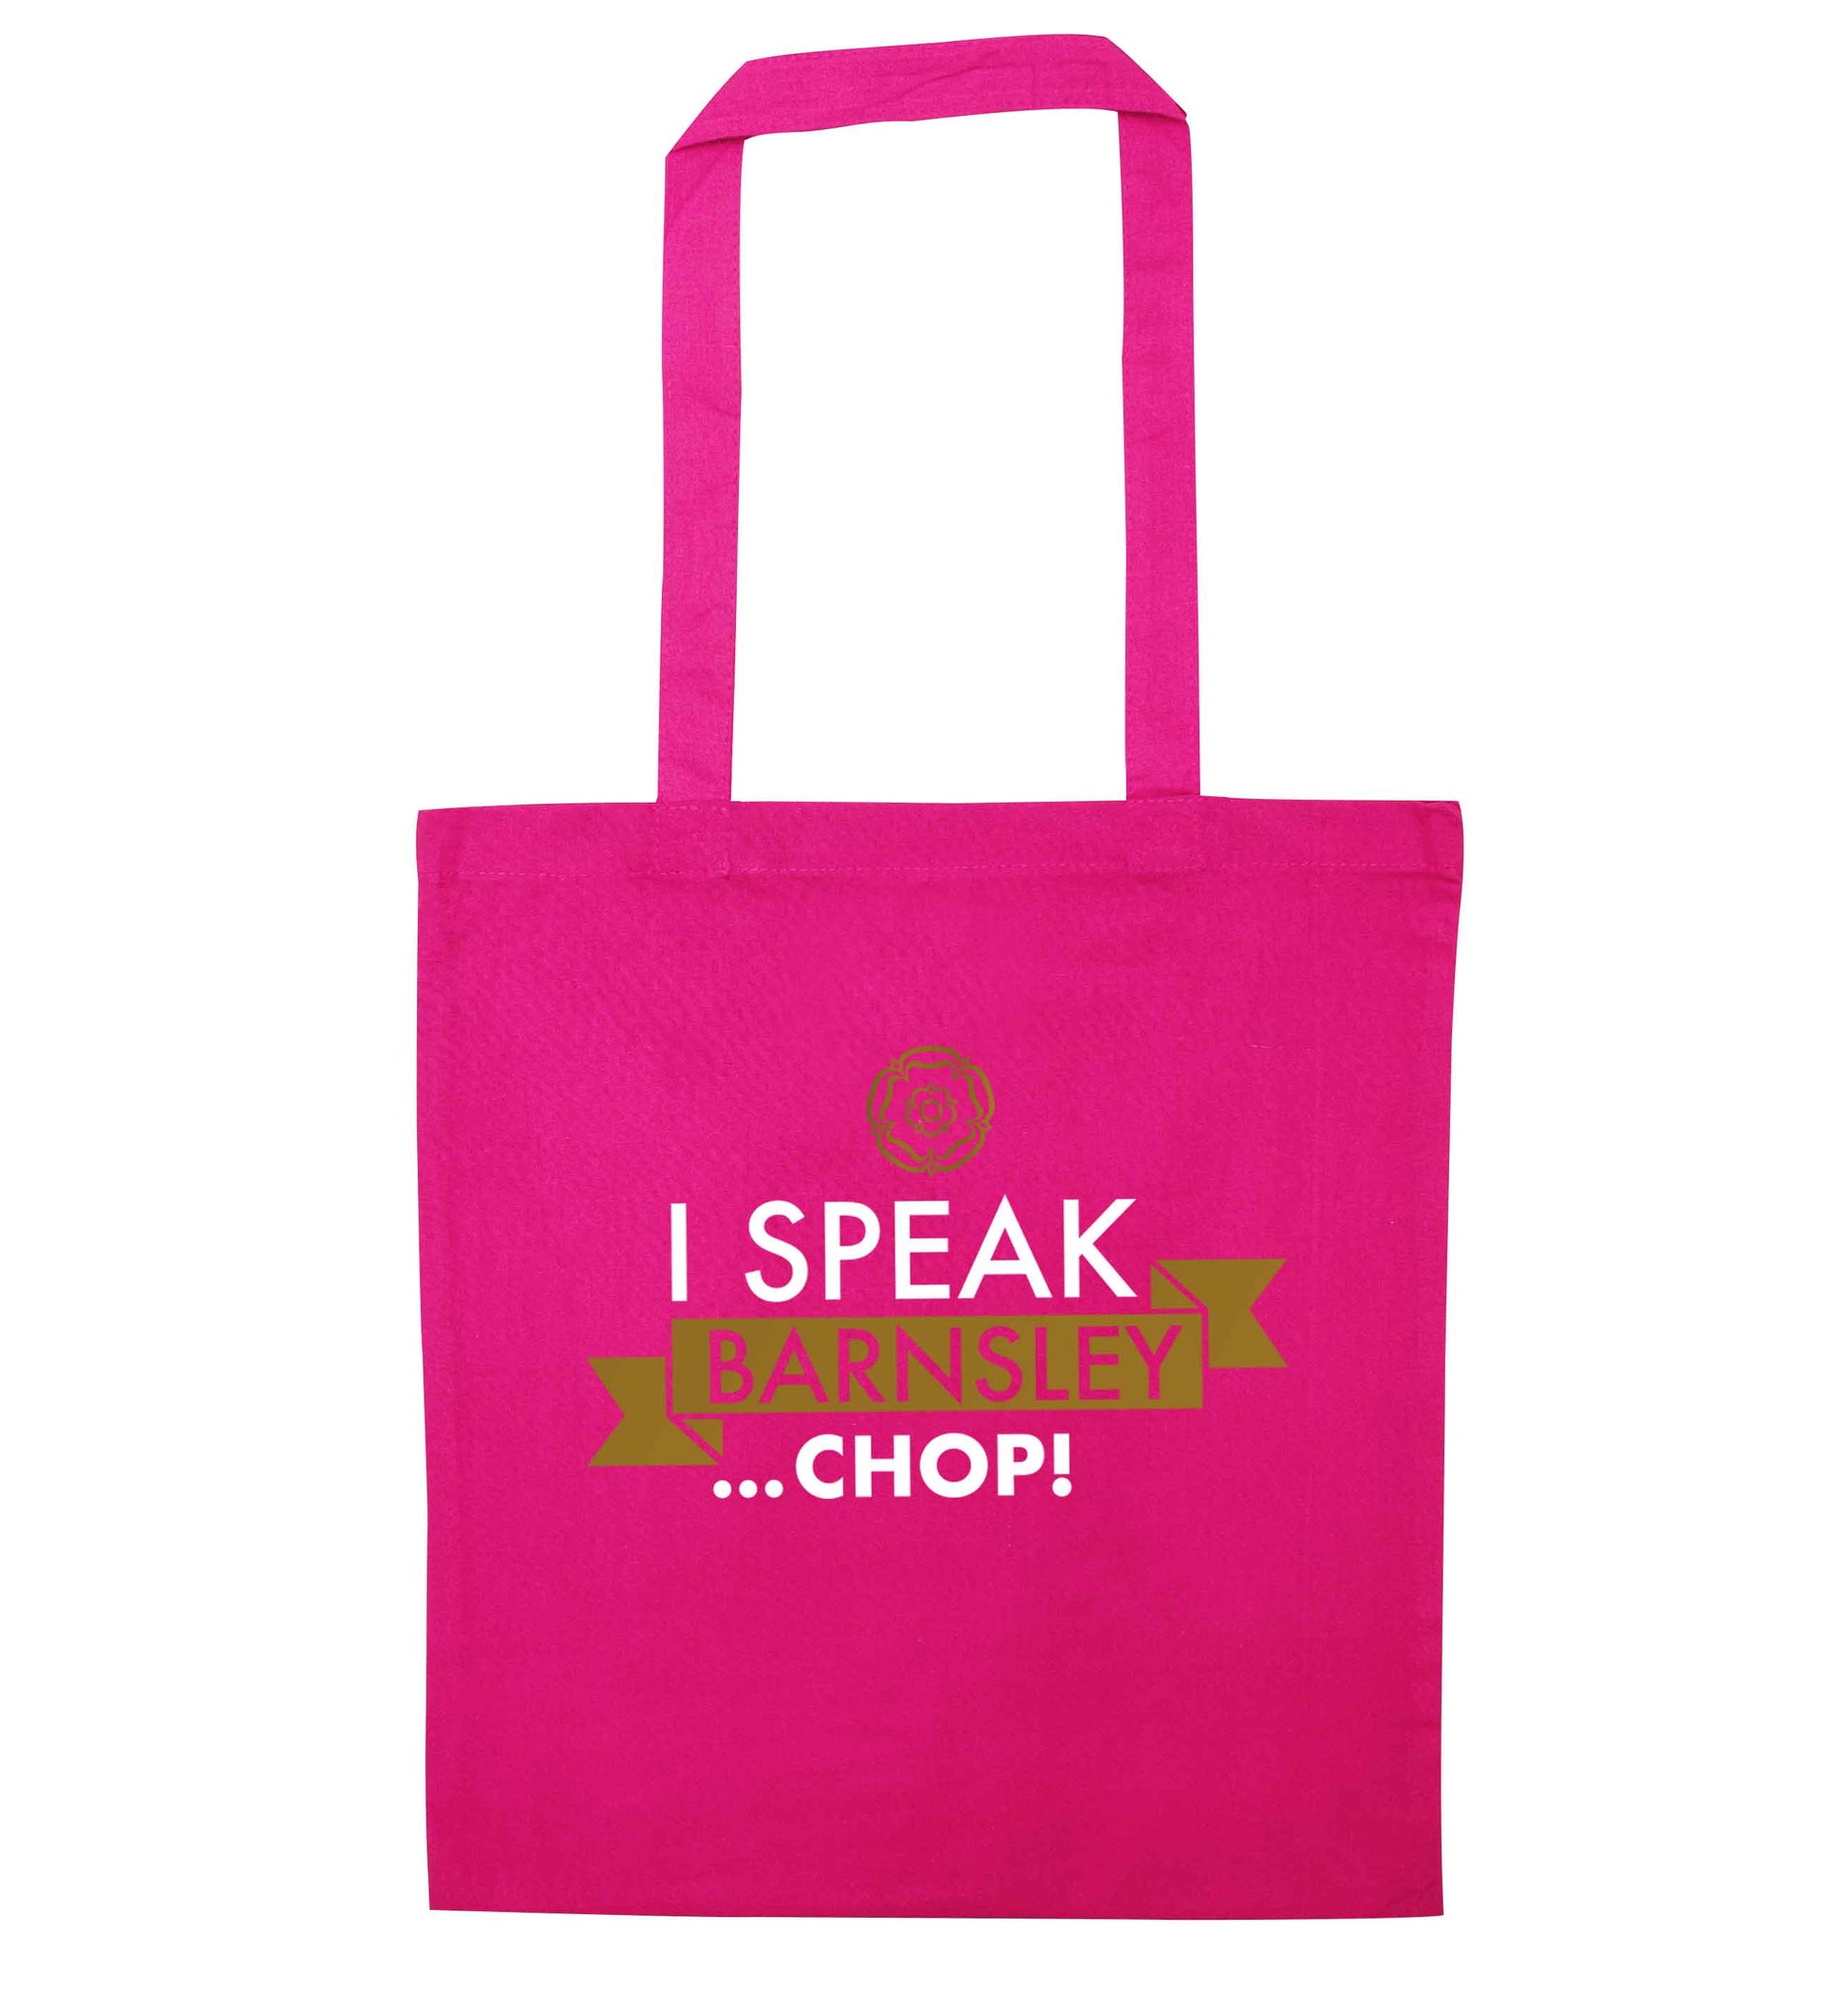 I speak Barnsley...chop! pink tote bag